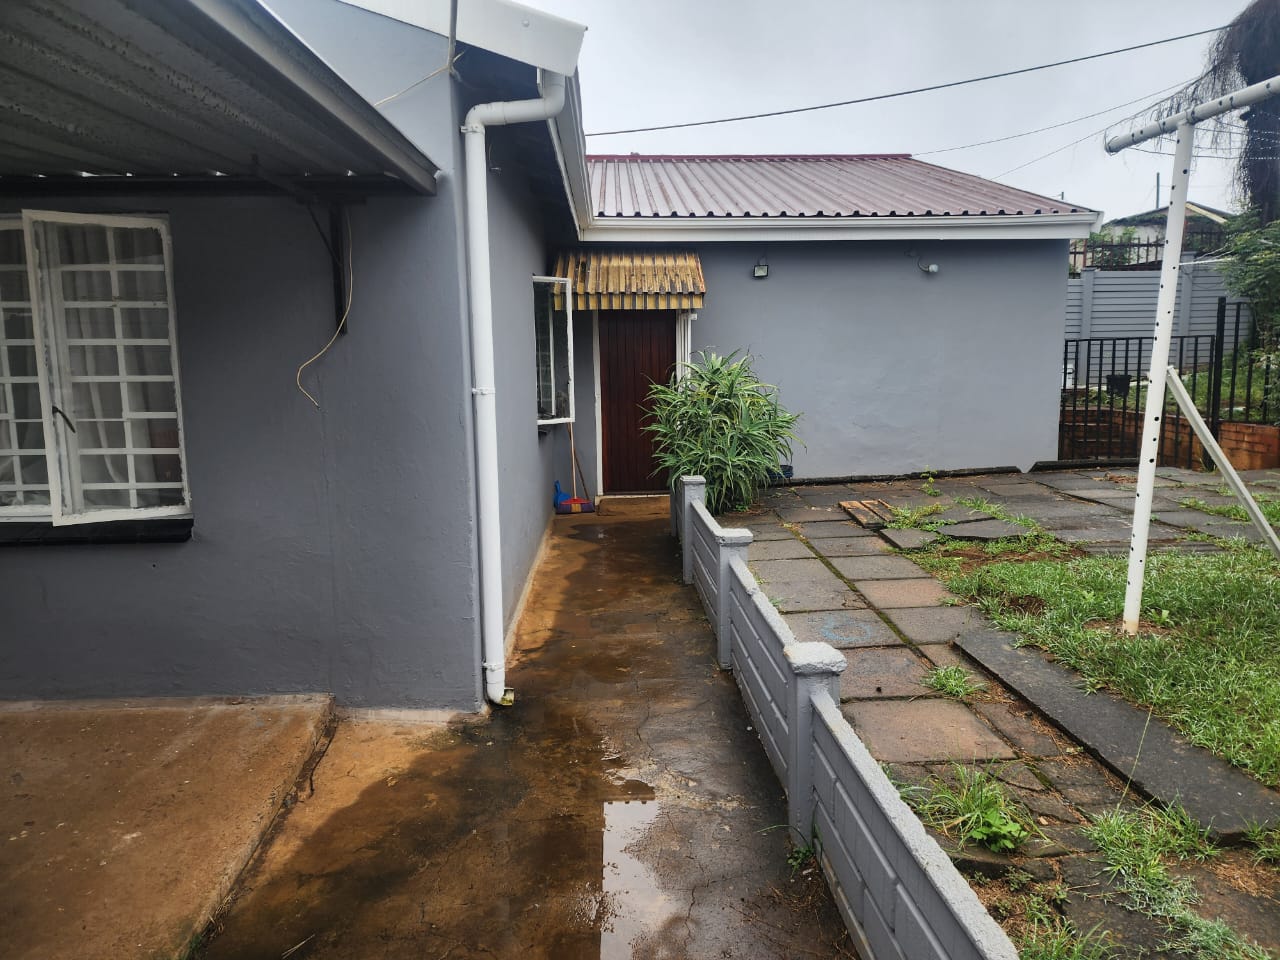 3 Bedroom Property for Sale in Raisethorpe KwaZulu-Natal